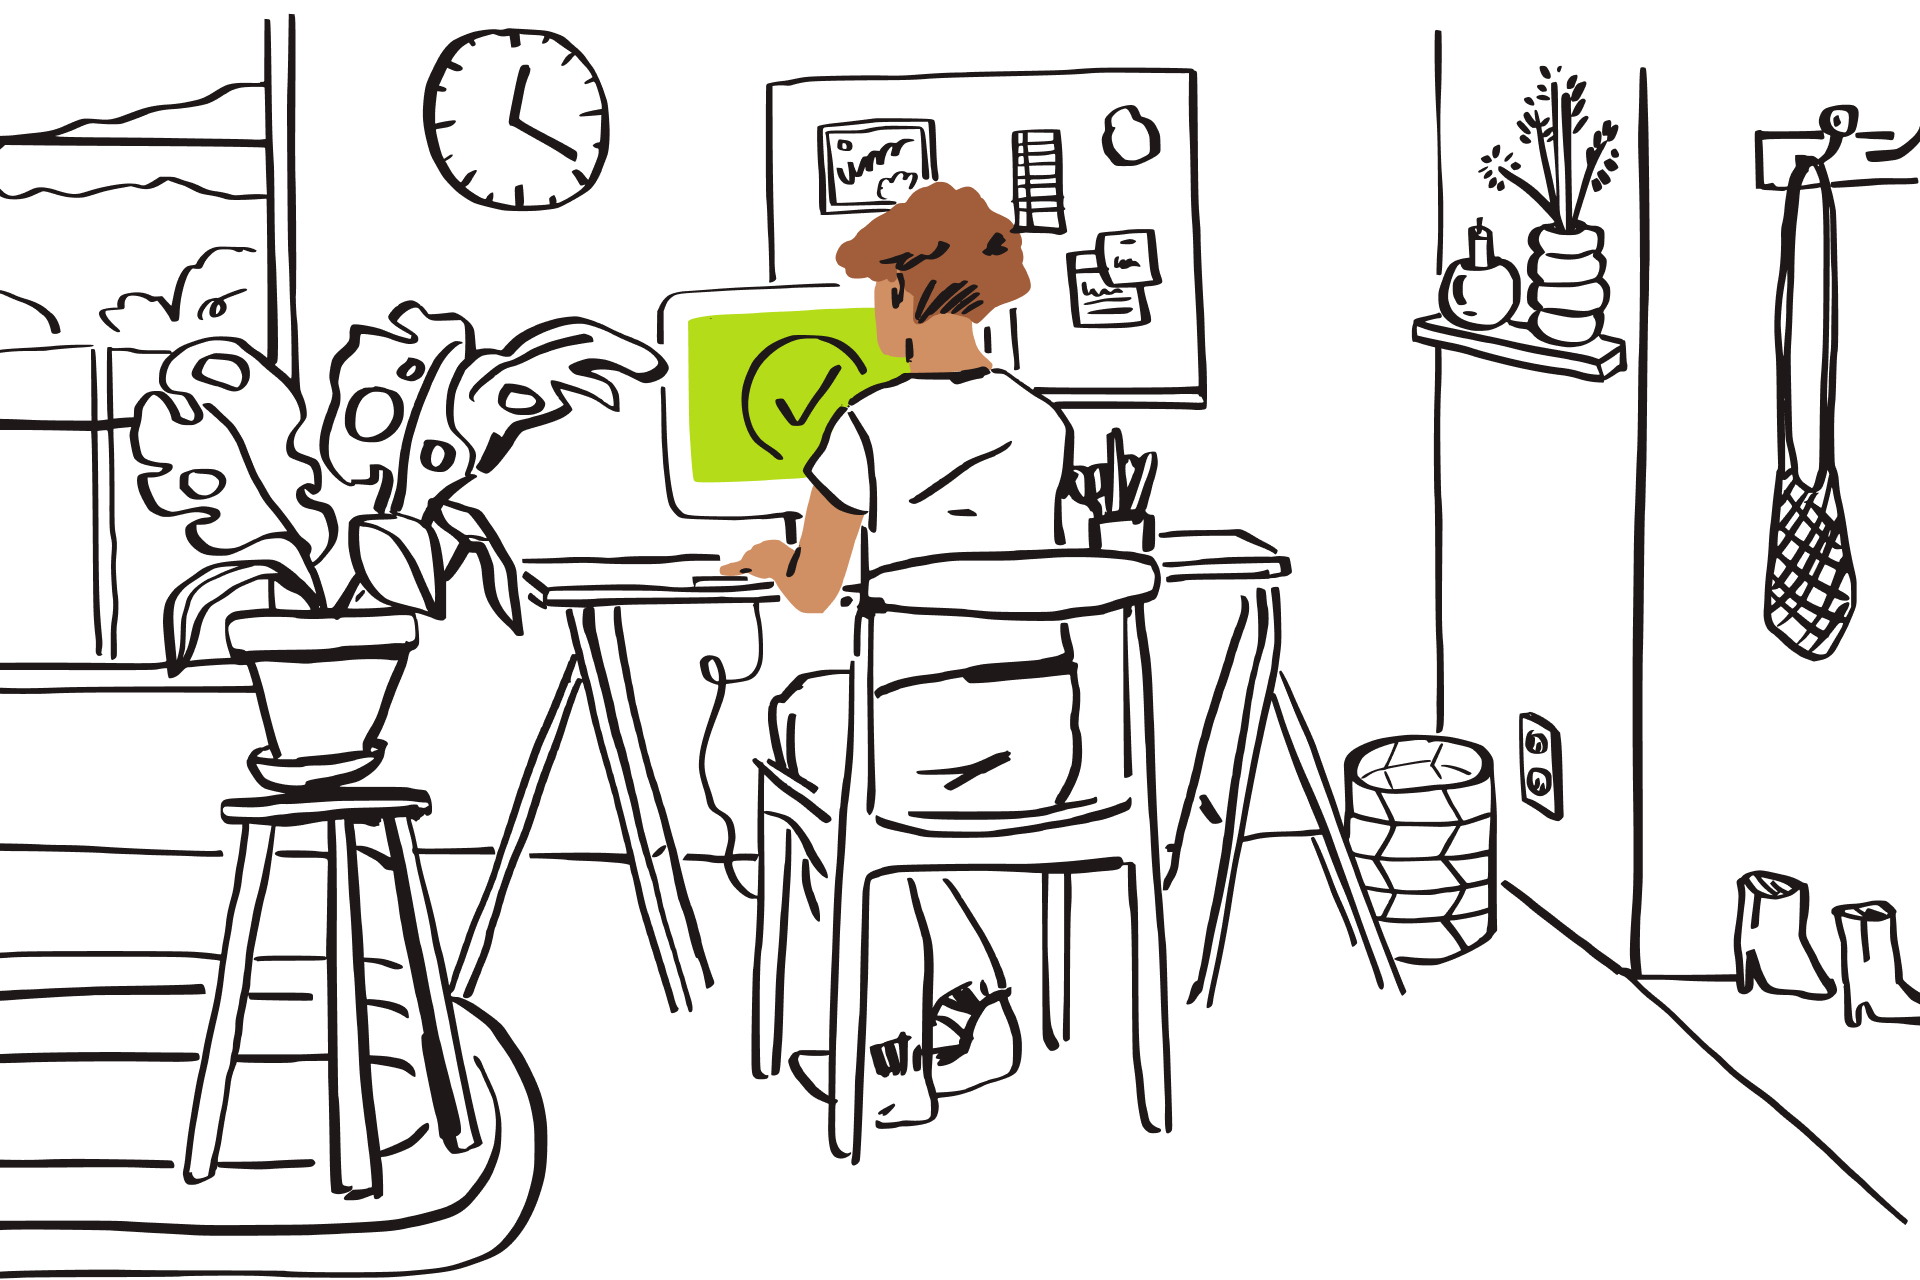 Stregtegning af et rum med en person, der skriver på en computer med en grøn skærm og et fluebensikon.